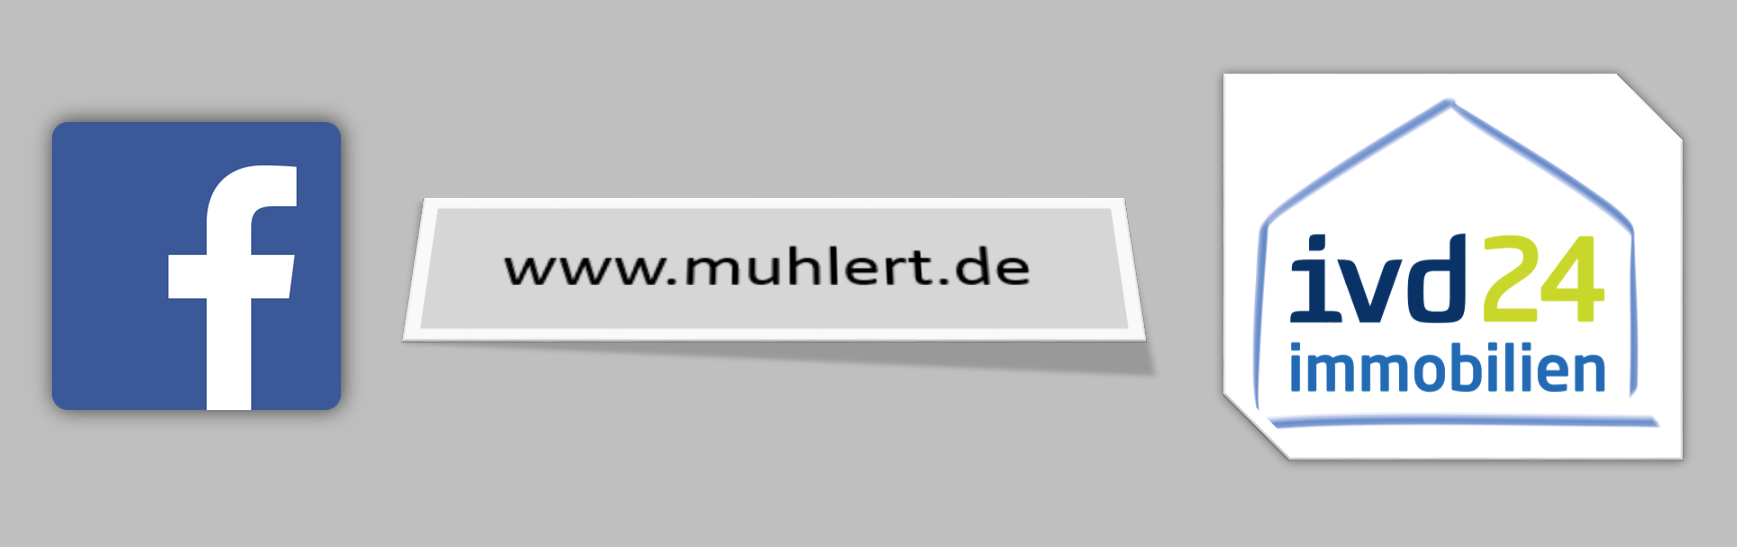 Exklusiv - Alle neuen Immobilienangebote jetzt 1 Woche früher auf www. muhlert.de, facebook und ivd24.de